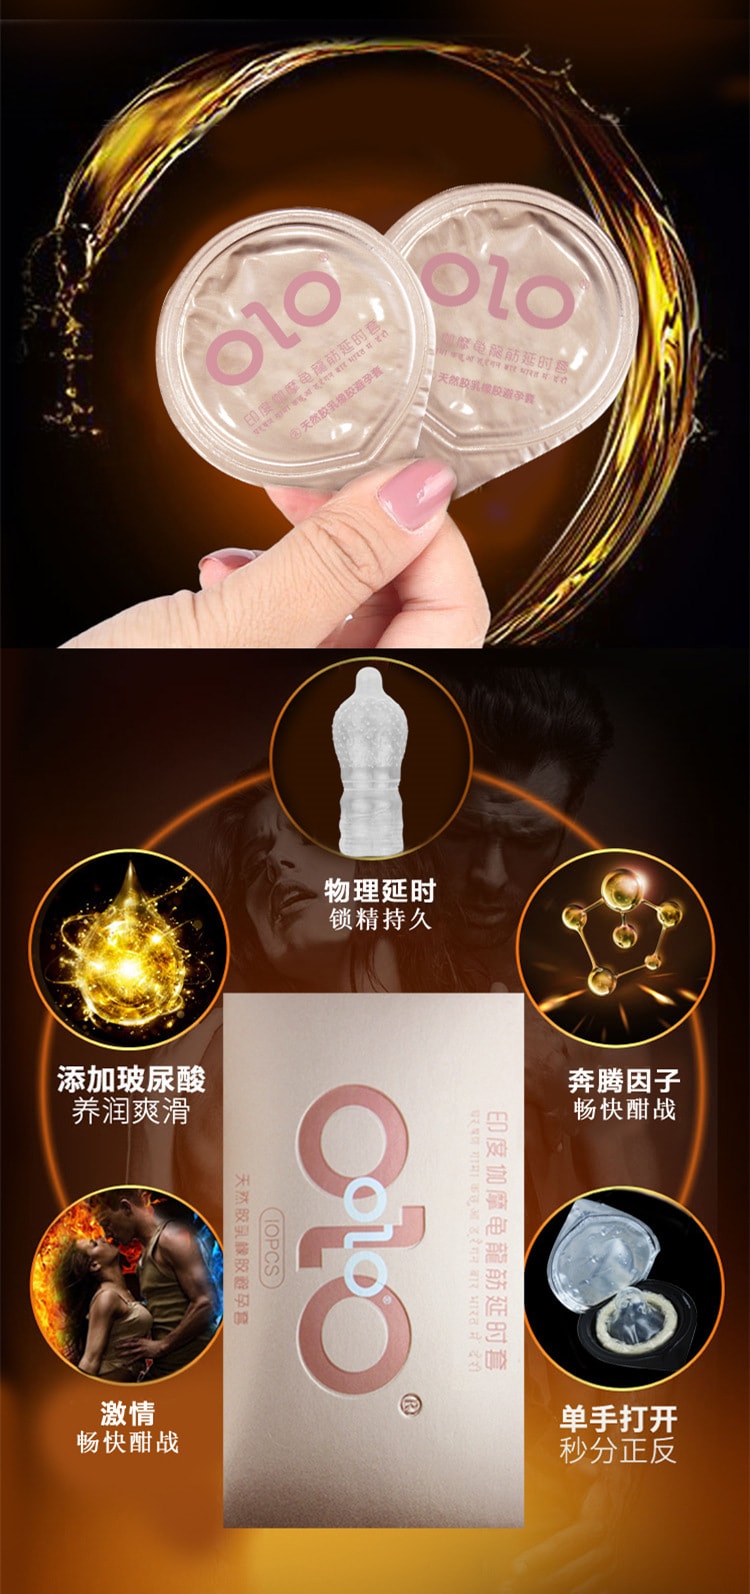 【中国直邮】OLO 印度控时避孕套超薄001安全套 蓝盒 10只装